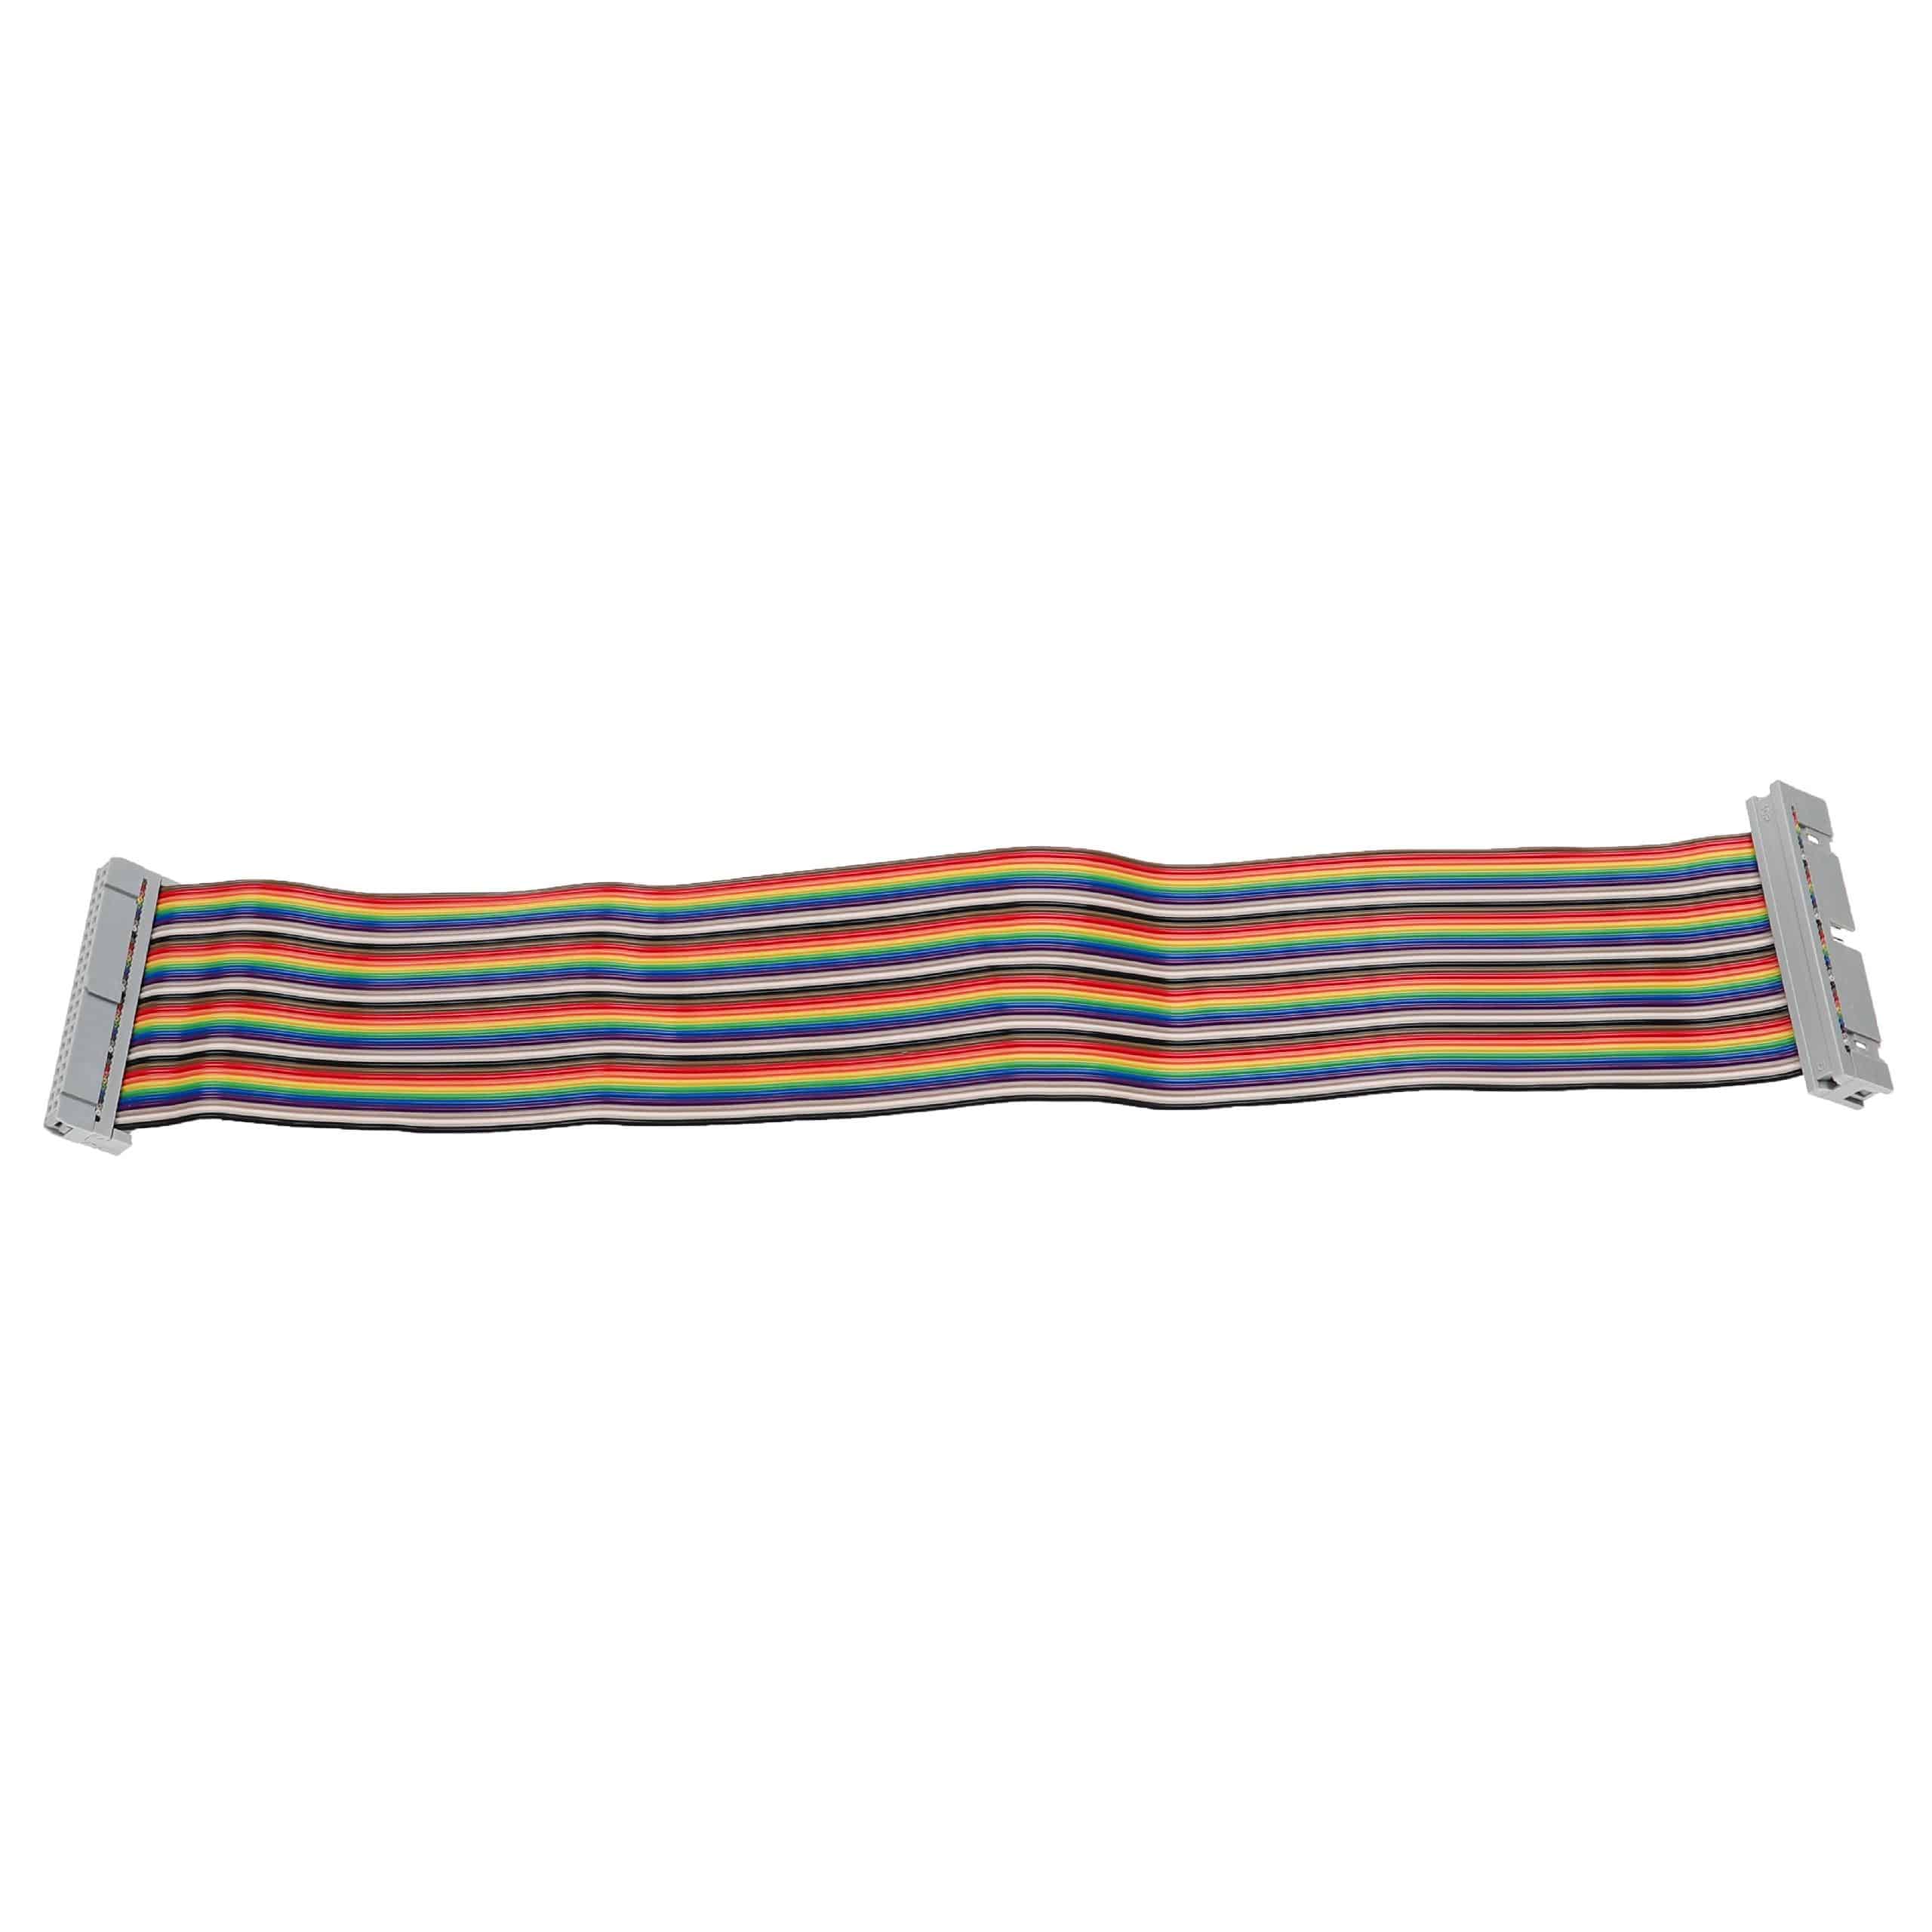 Cable GPIO 40 pines compatible con Raspberry Pi miniordenador - Cable alargador GPIO multicolor, 30 cm